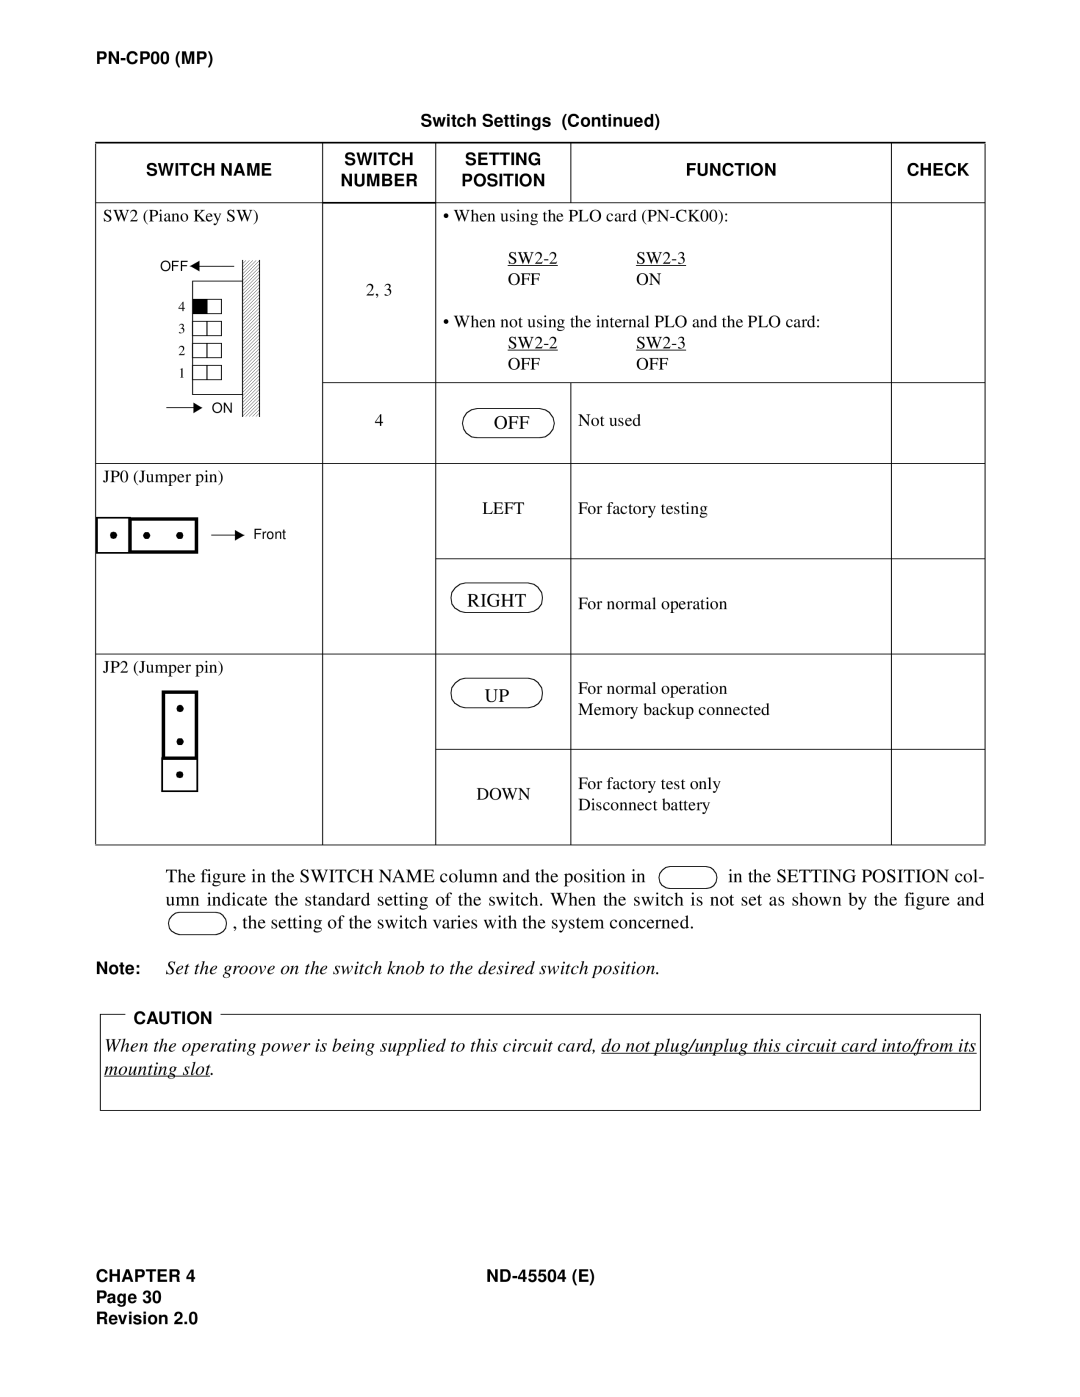 NEC 2000 IVS manual Right 